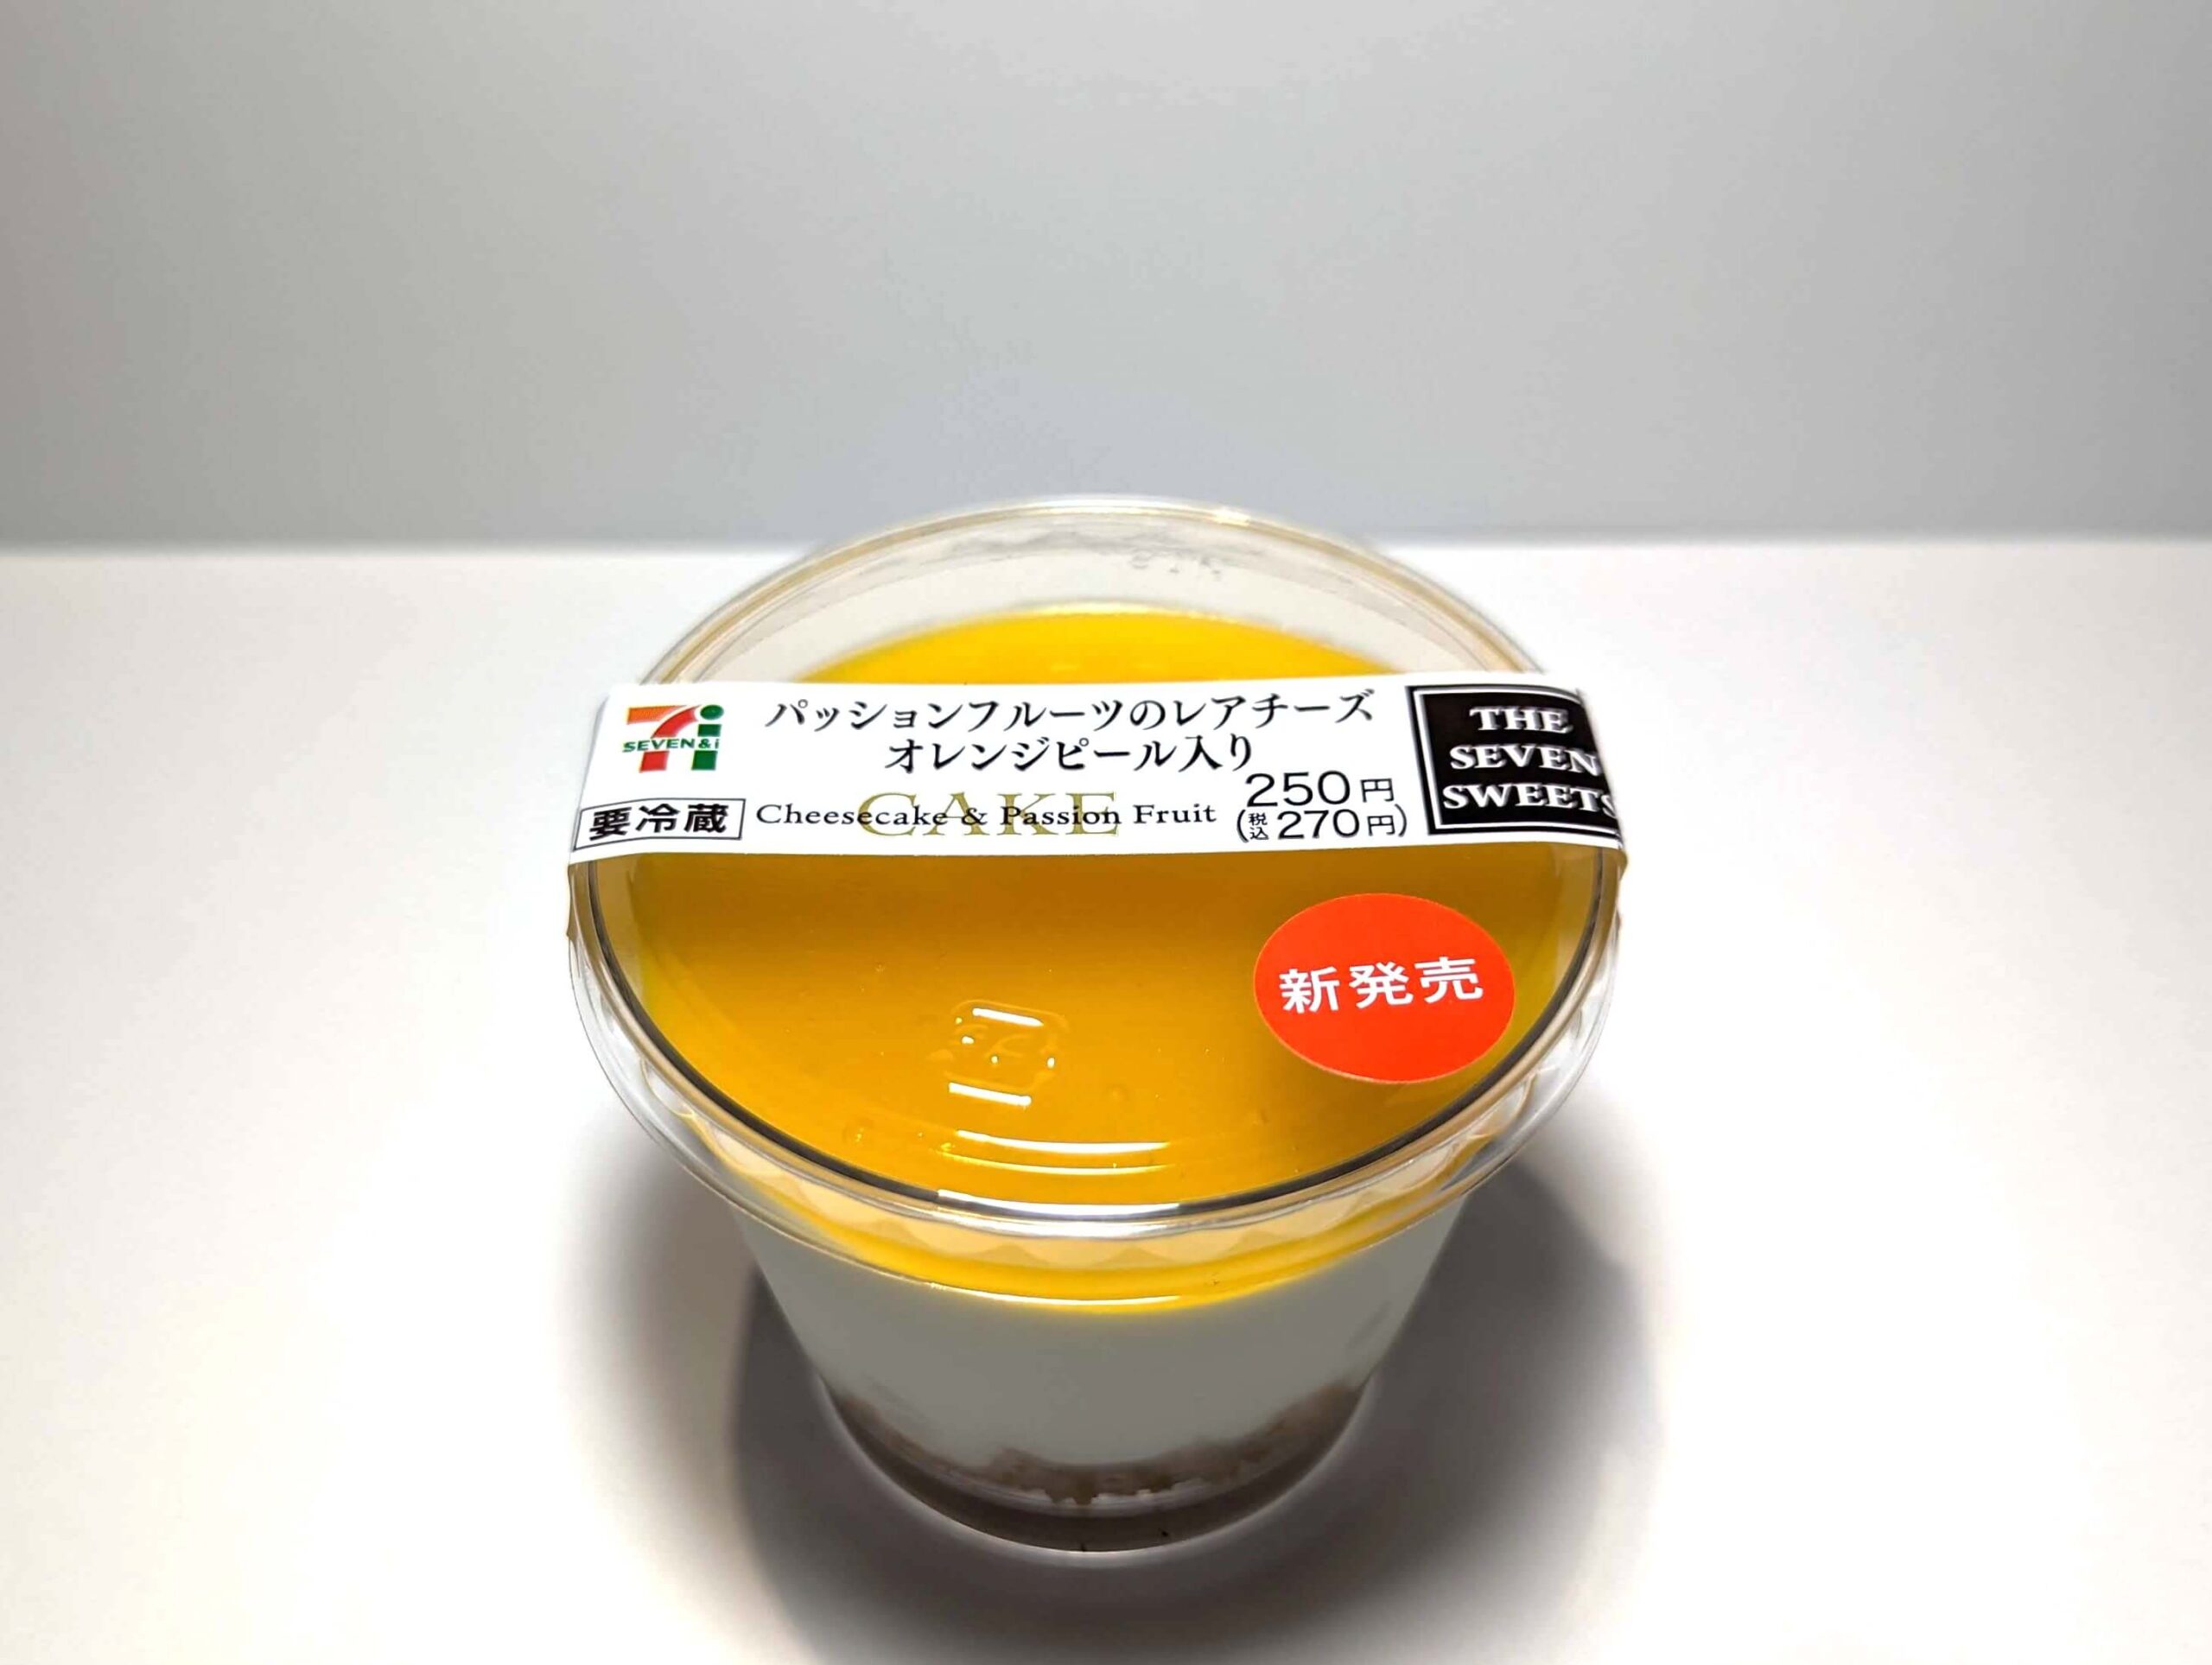 セブンイレブン・パッションフルーツのレアチーズ オレンジピール入り (5)